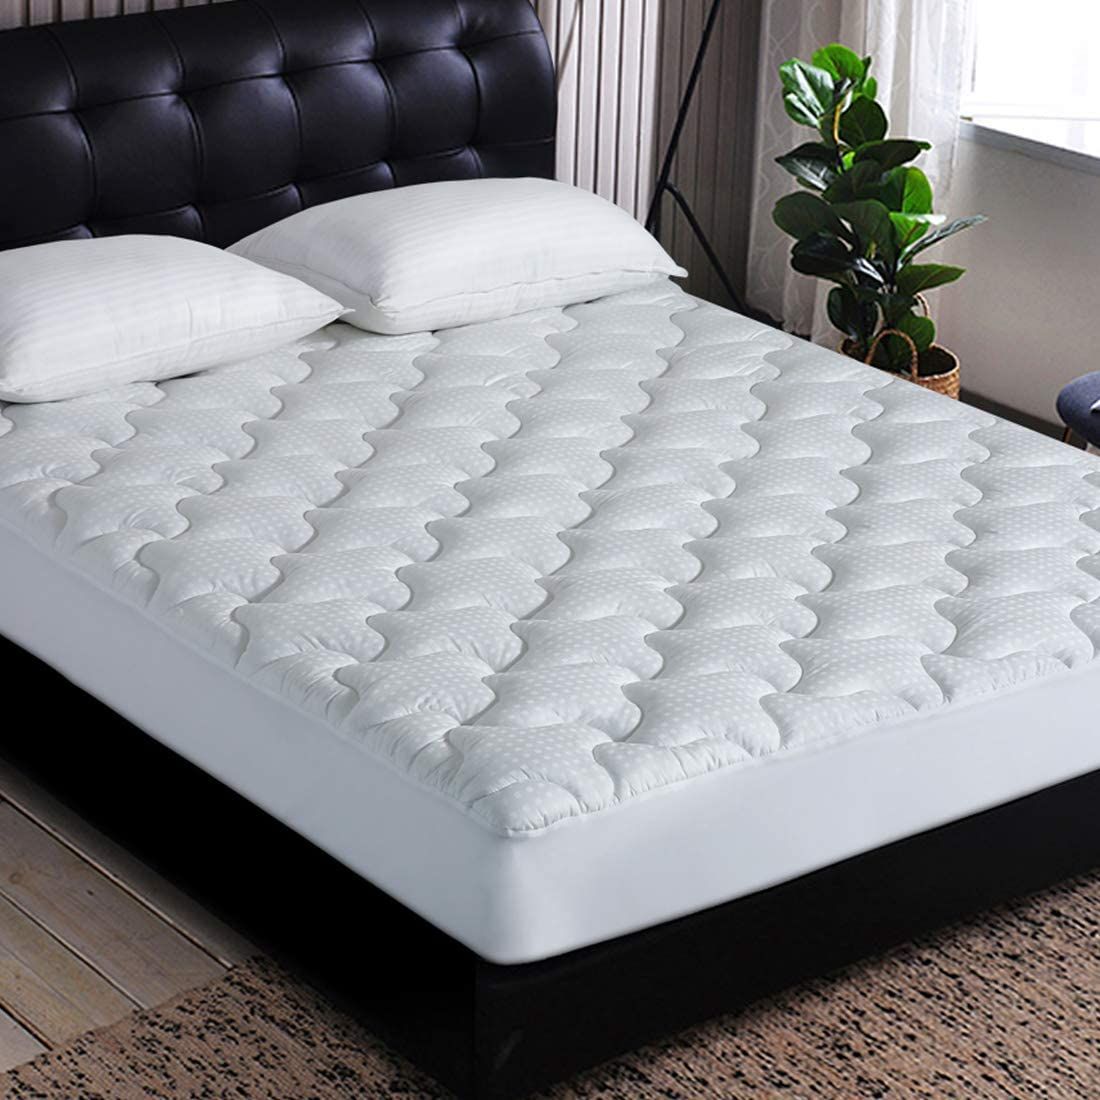 Impermeable protectores De Colchón Extra Profundo Acolchado Cubierta de cama equipada todos los tamaños UK